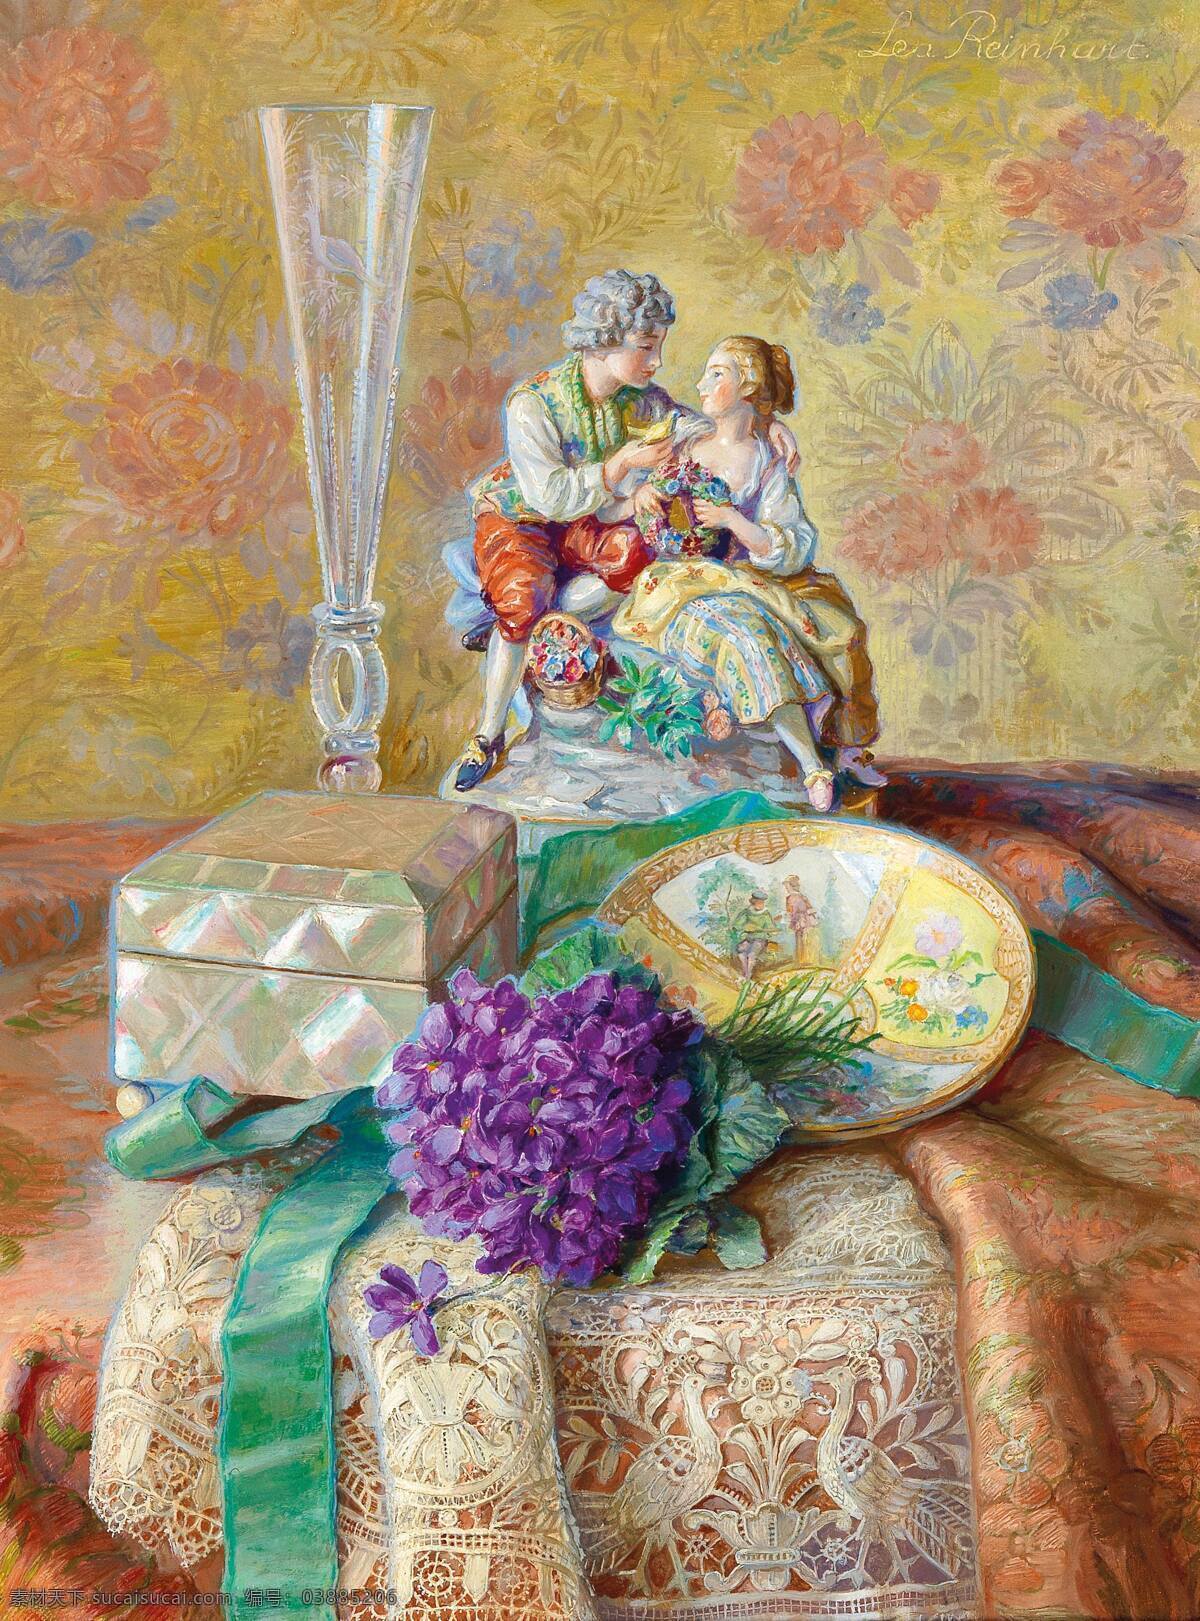 里昂 莱因哈特 作品 德国画家 静物油画 紫罗兰花 玻璃口罩 收纳盒 瓷器在 19世纪油画 油画 文化艺术 绘画书法